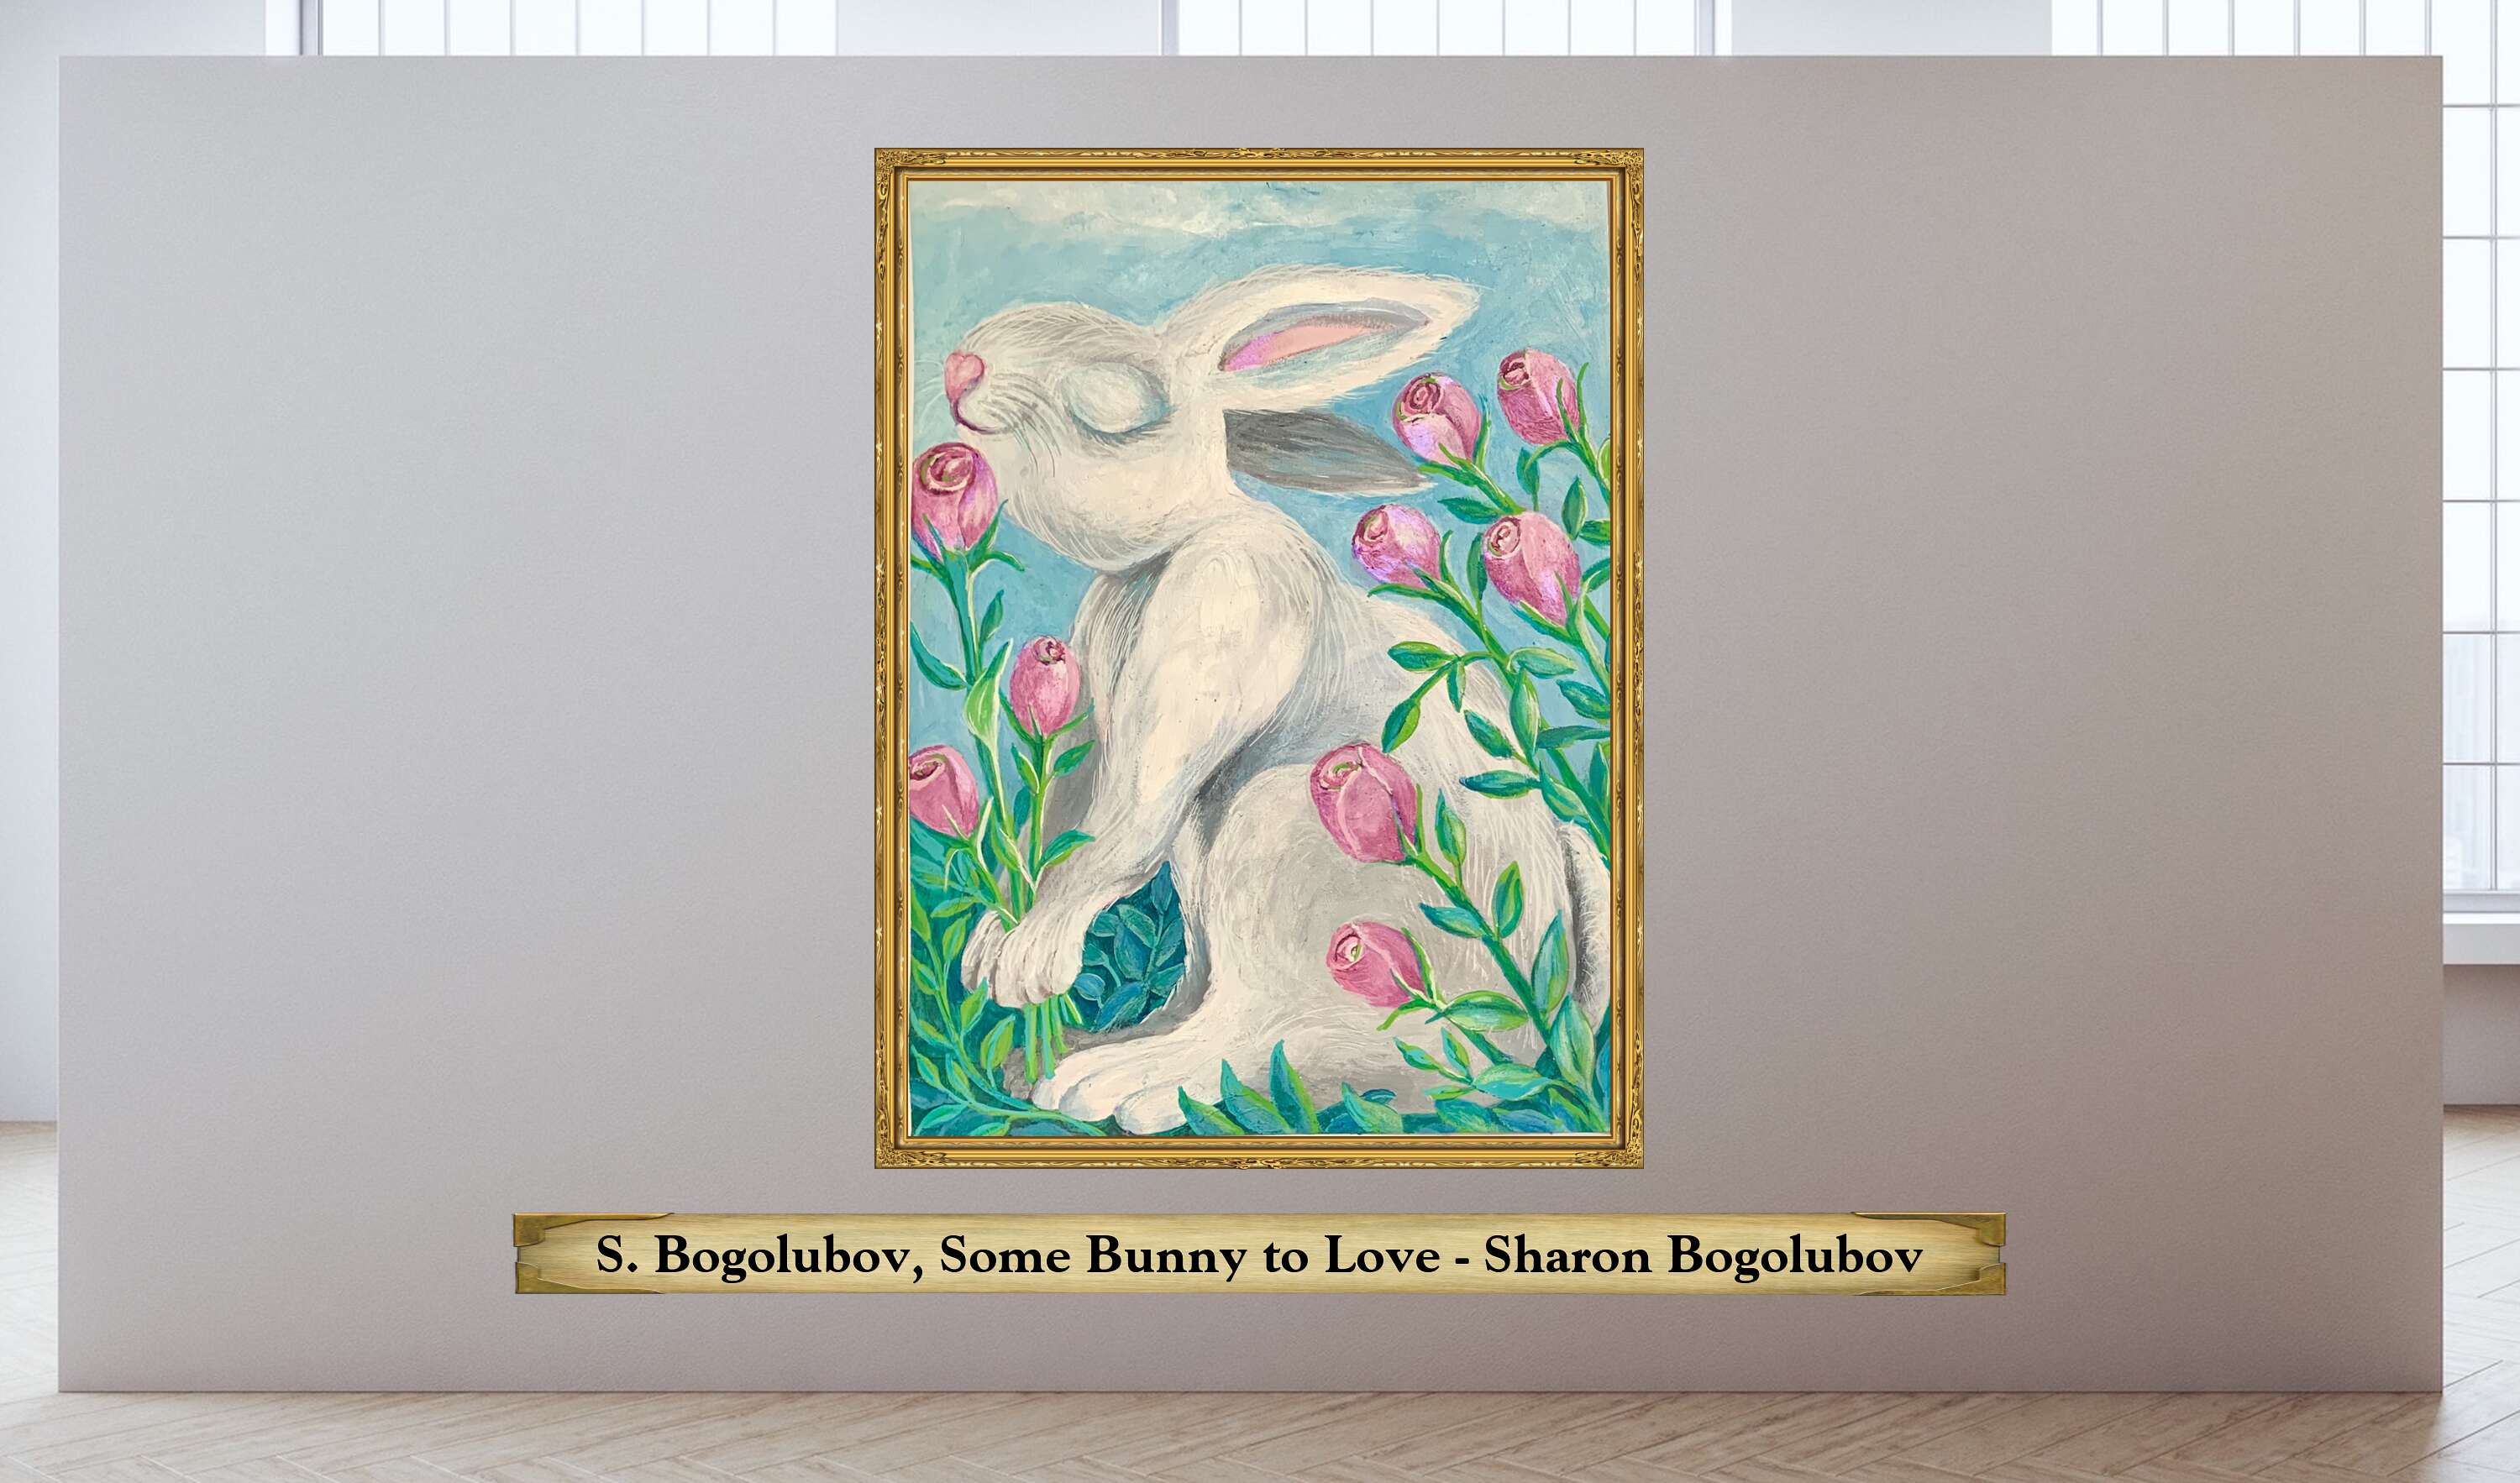 S. Bogolubov, Some Bunny to Love - Sharon Bogolubov